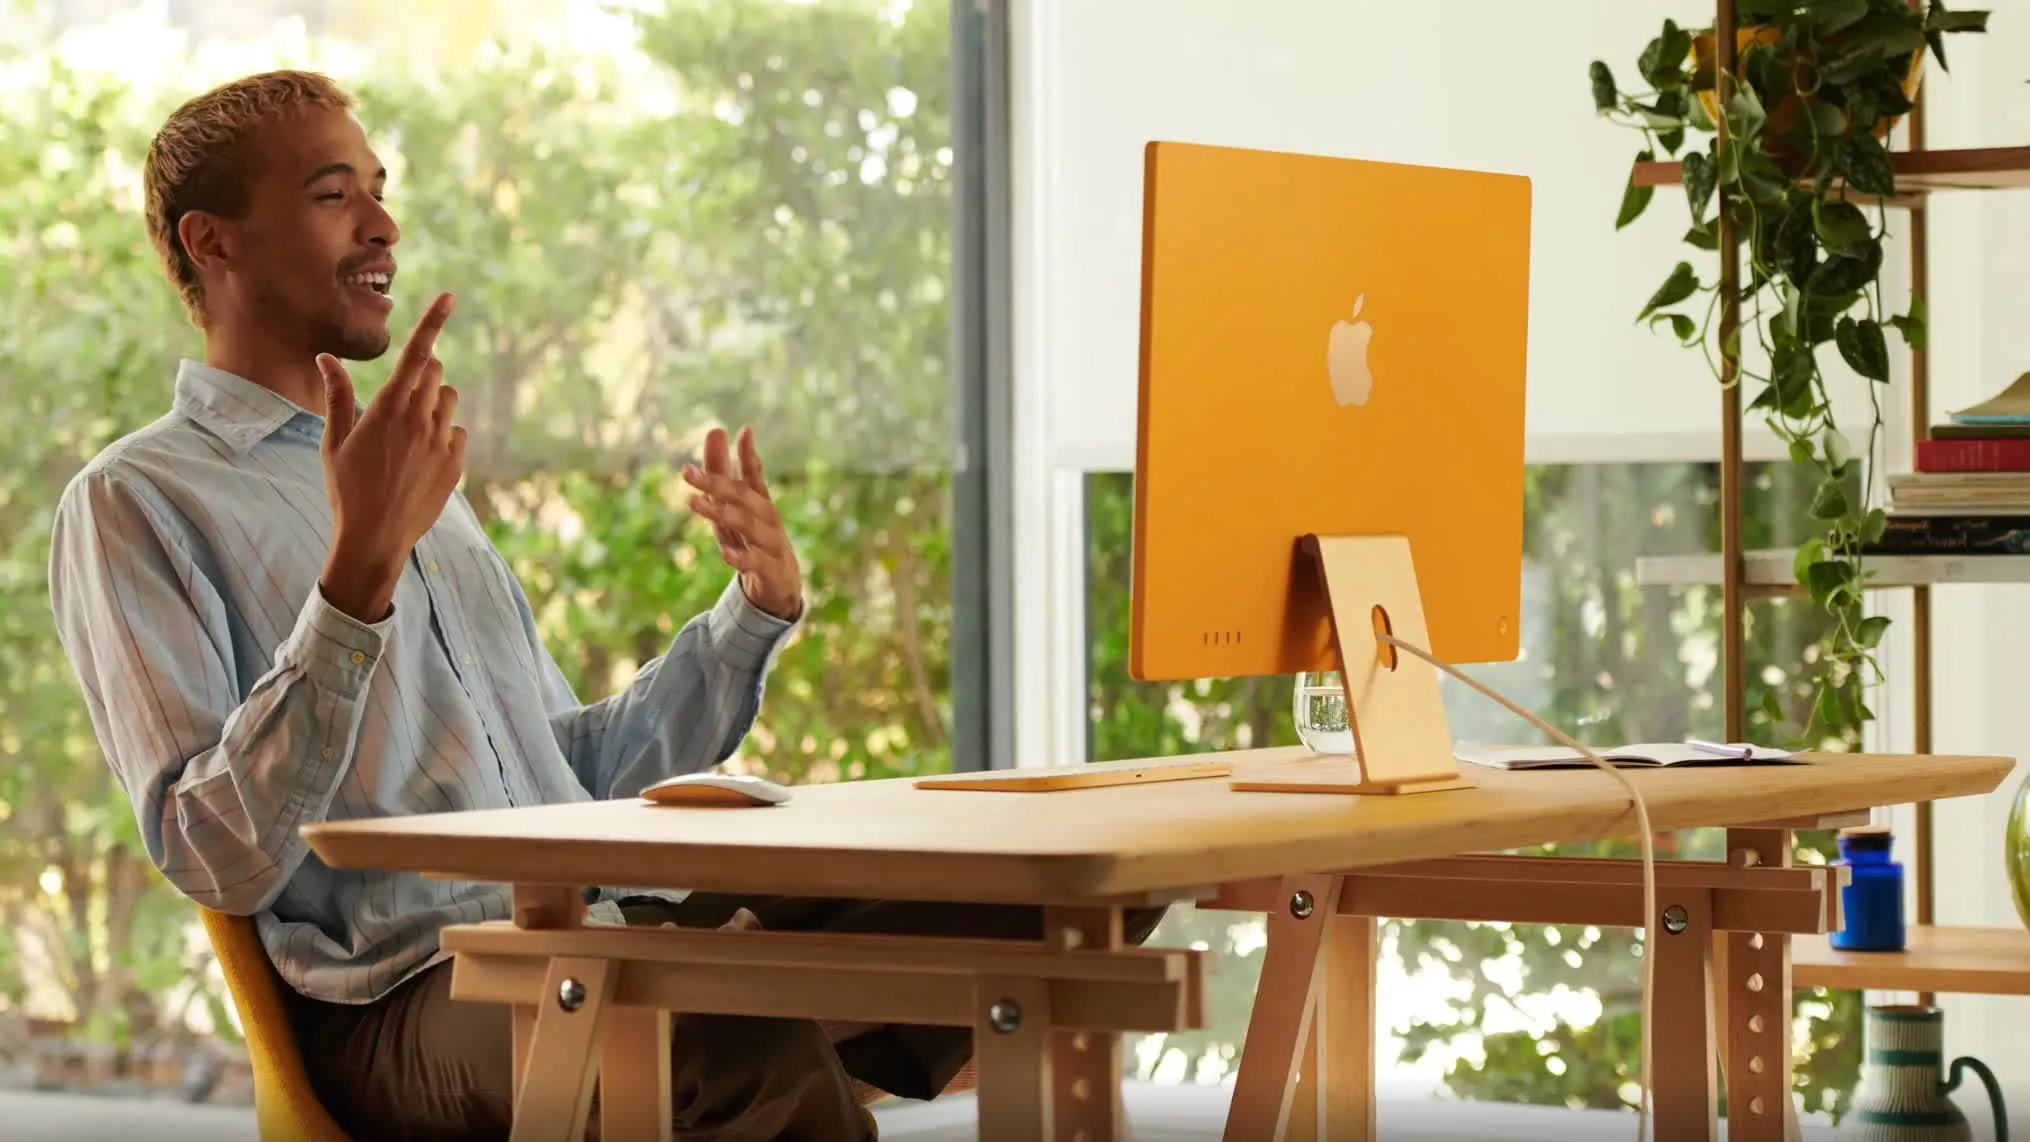 يحصل Apple iMac على تحديث للتصميم ، وأجهزة M1 أسرع وألوان وافرة 2021 باب العلم D-3elm